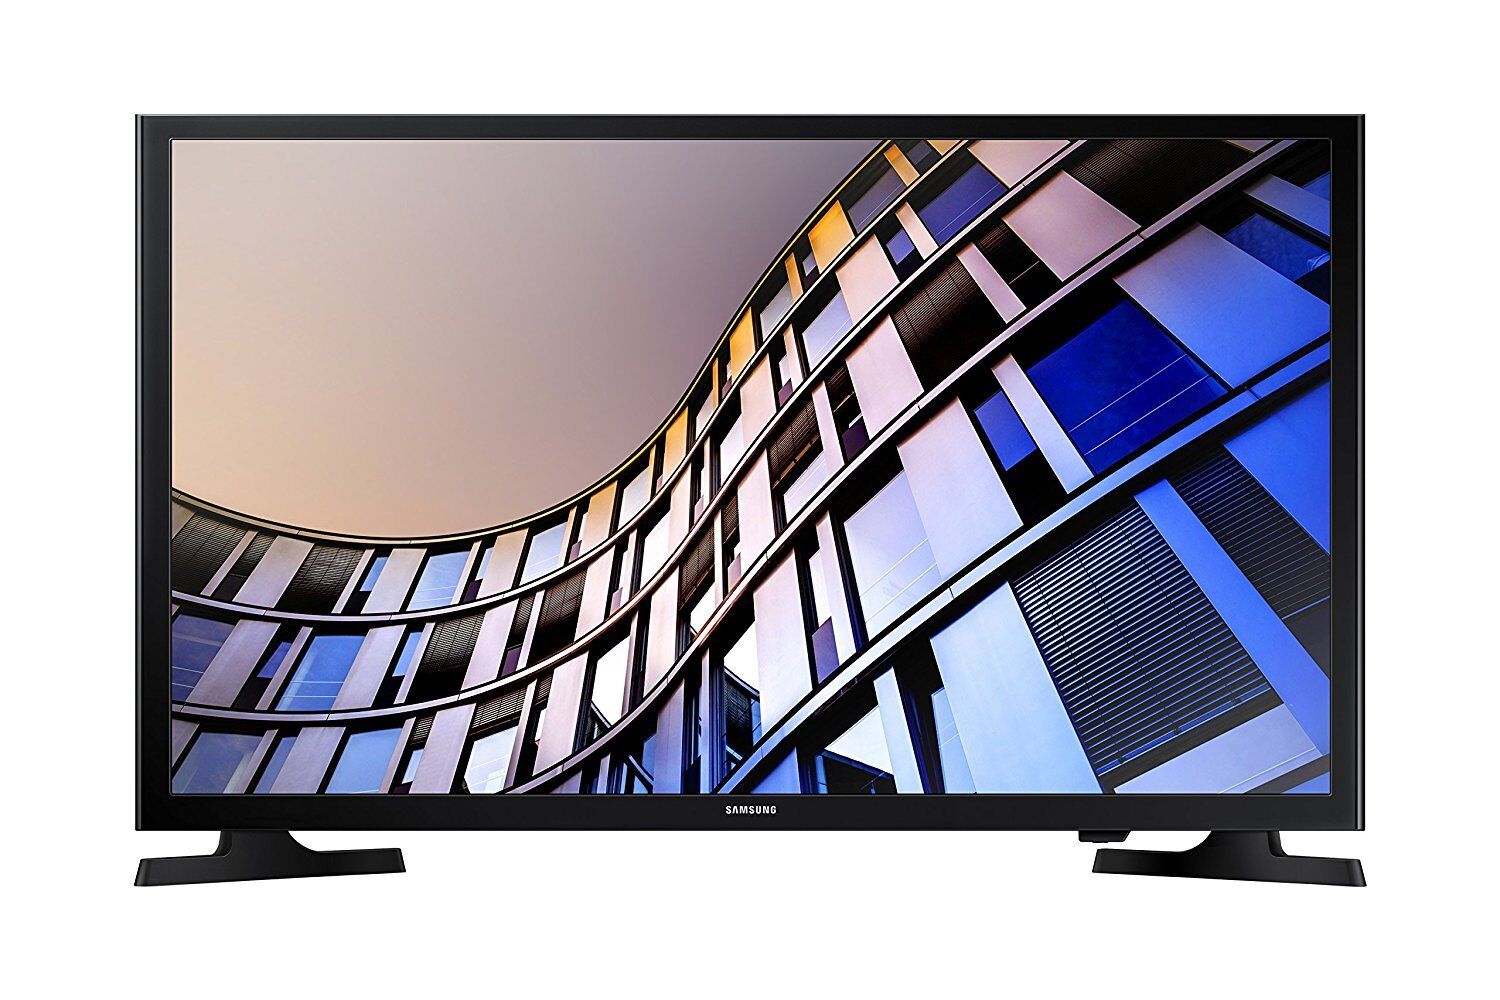 Samsung 32 Inch Smart LED HD TV w/ Built-in Wi-Fi 2 x HDMI & USB UN32M4500